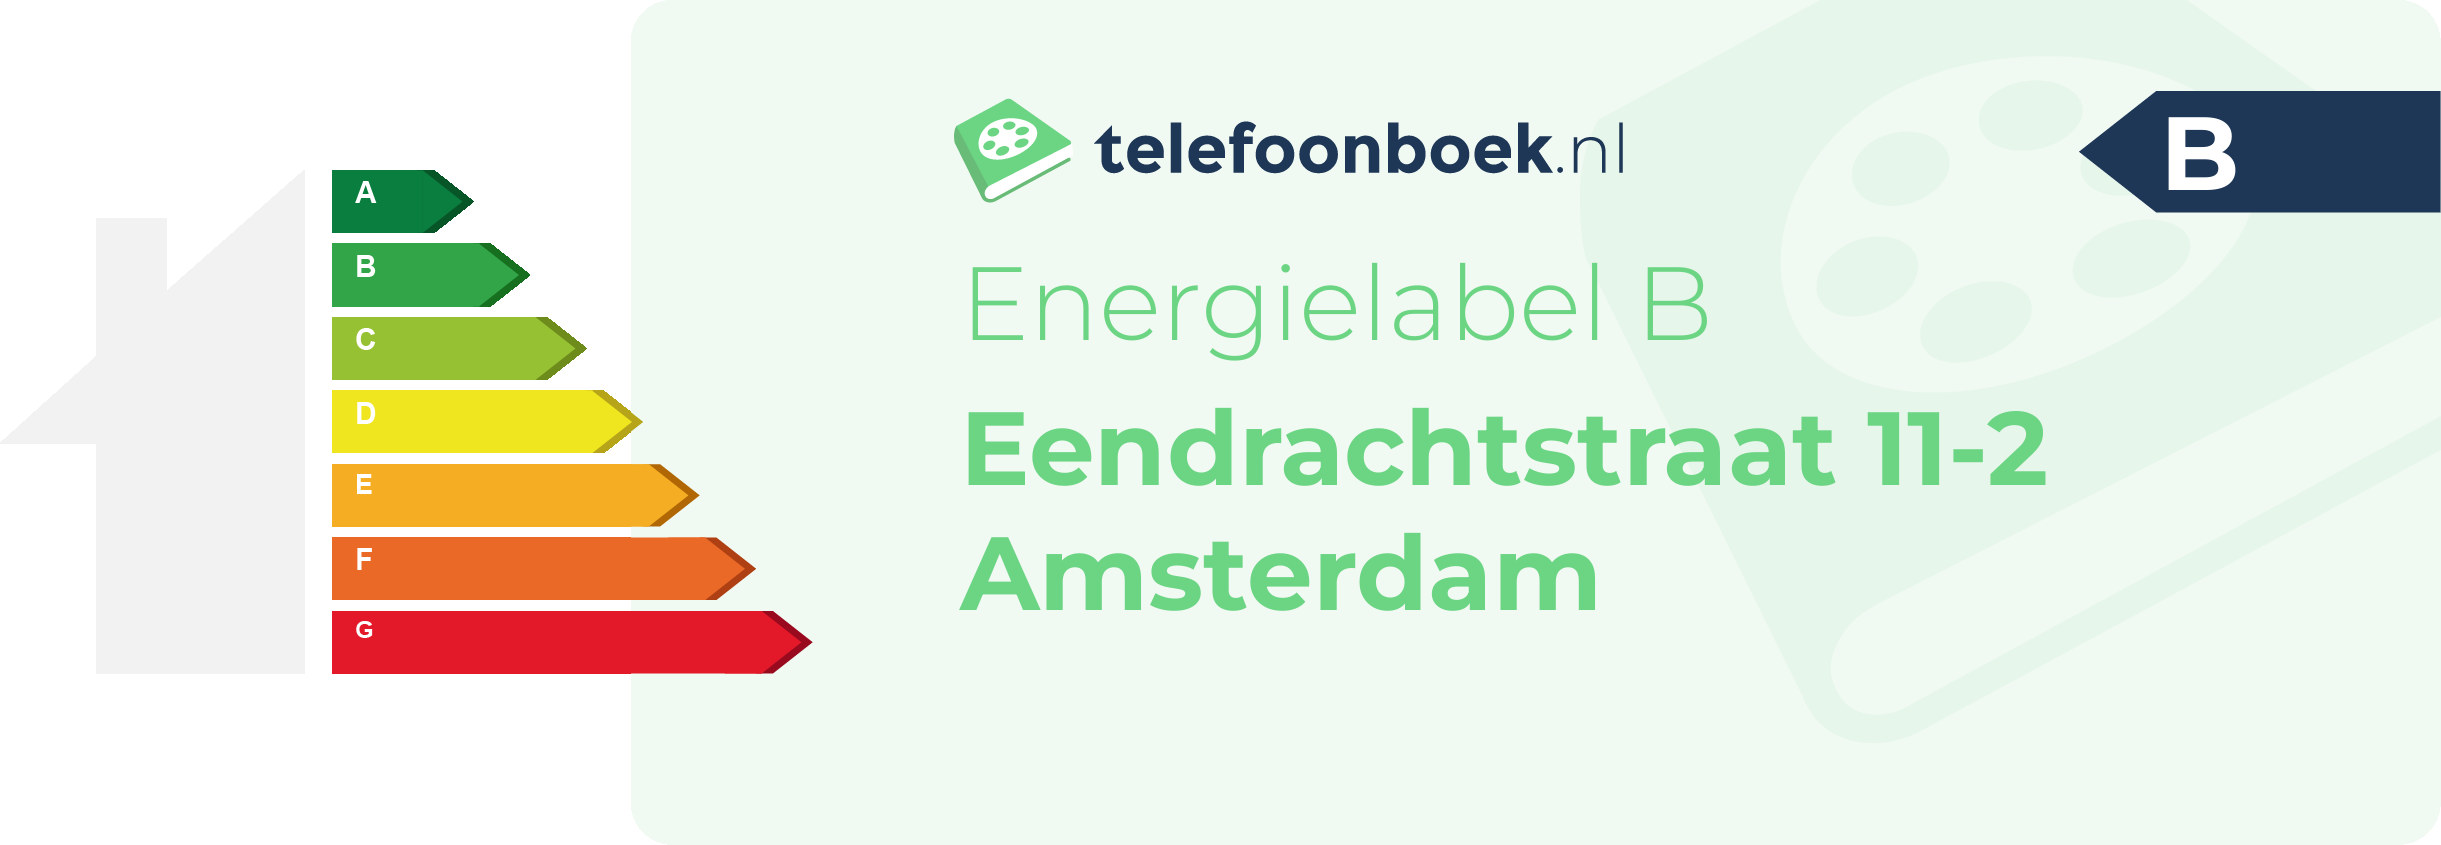 Energielabel Eendrachtstraat 11-2 Amsterdam